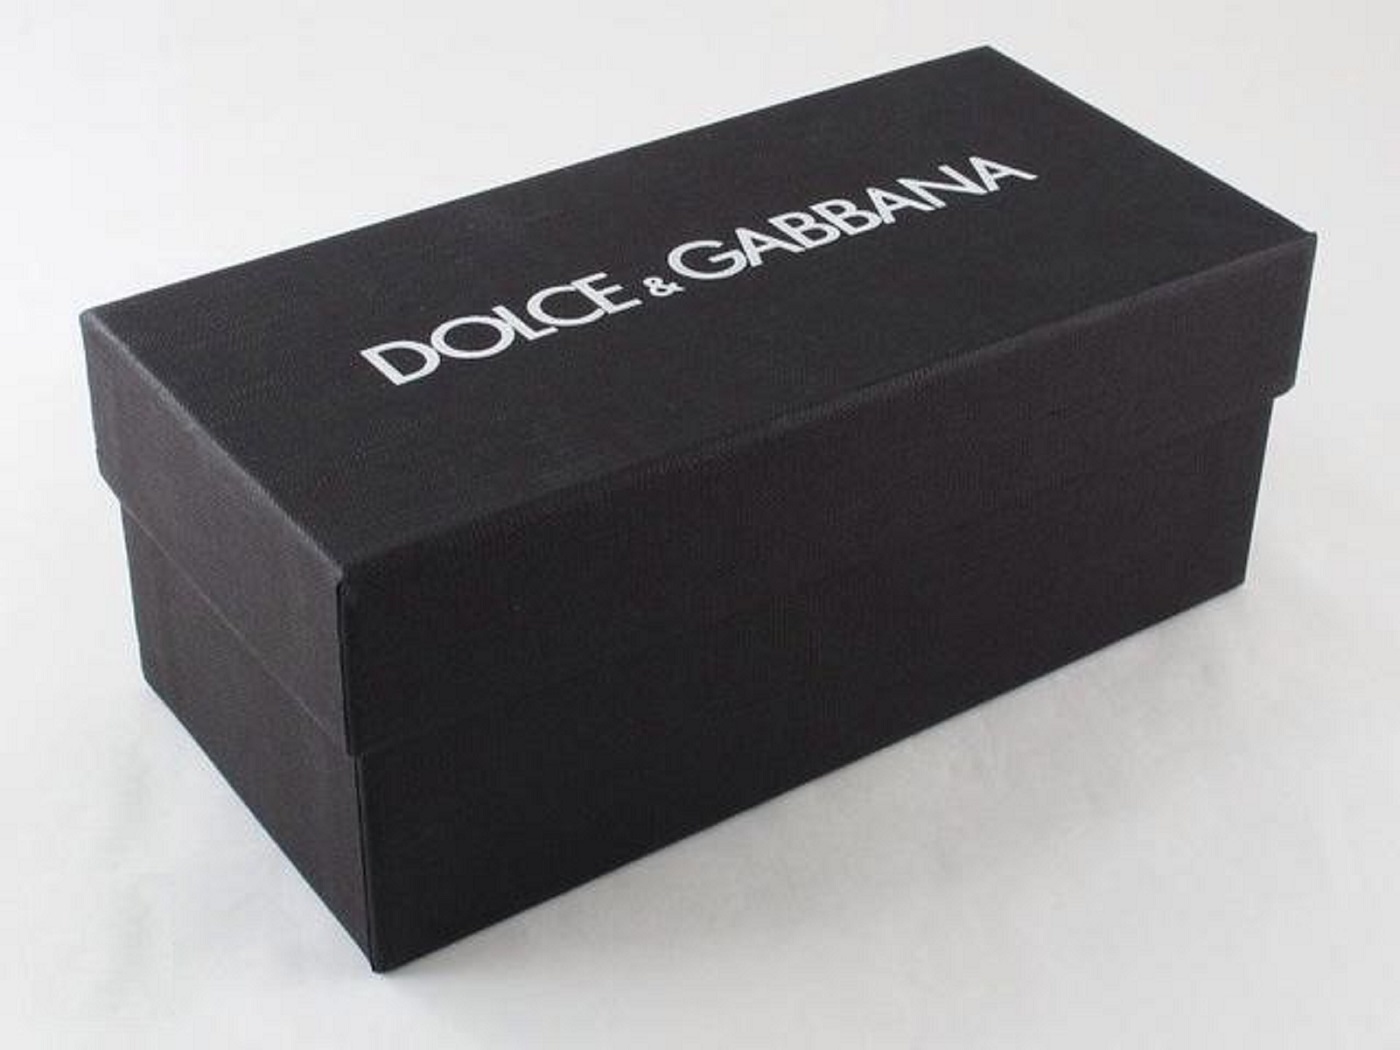 Erkennen Sie gefälschte Dolce & Gabbana Sonnenbrillen - überprüfen Sie die Box und das Etui.